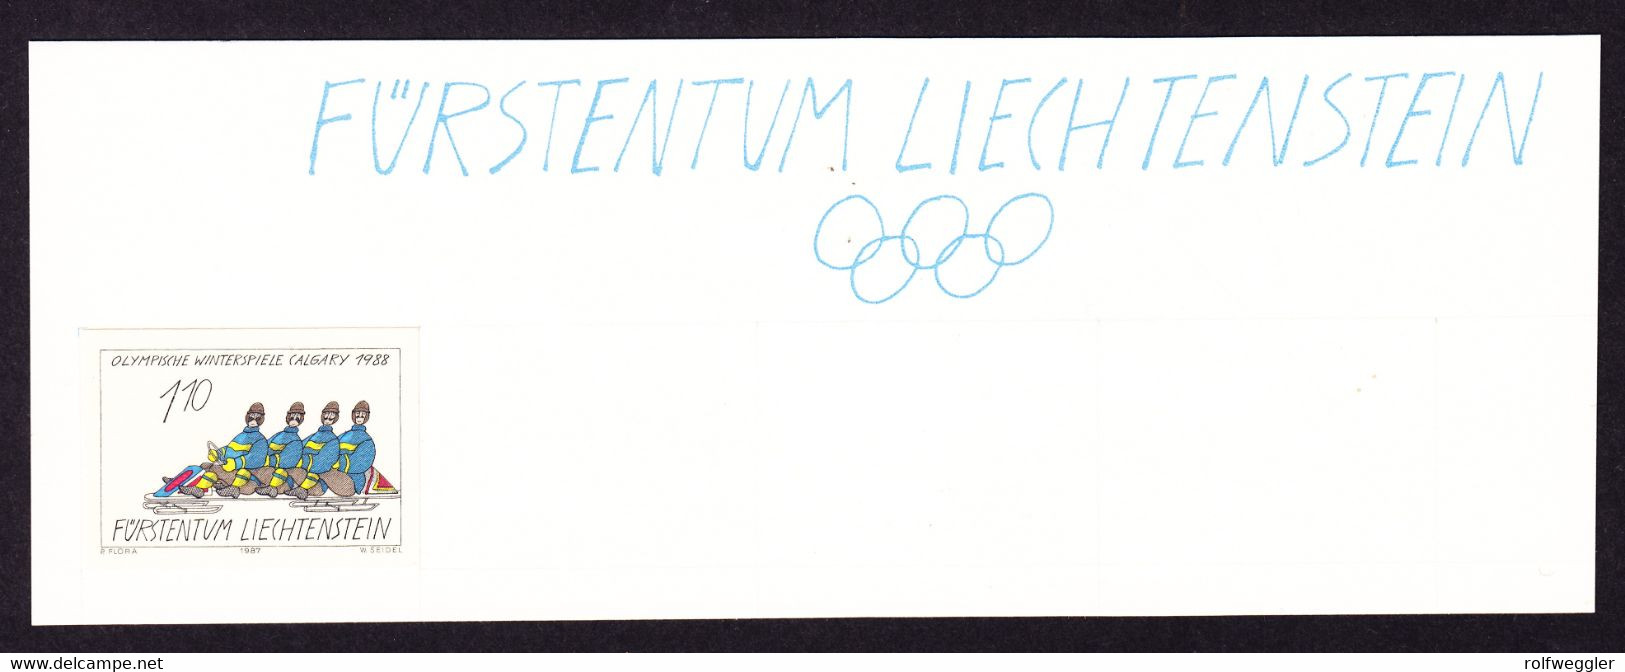 1987 Olympische Winterspiele Calgary. Komplete Ungezähnte Serie Auf Archiv-Karten. Unikat. Langlauf, - Probe- Und Nachdrucke